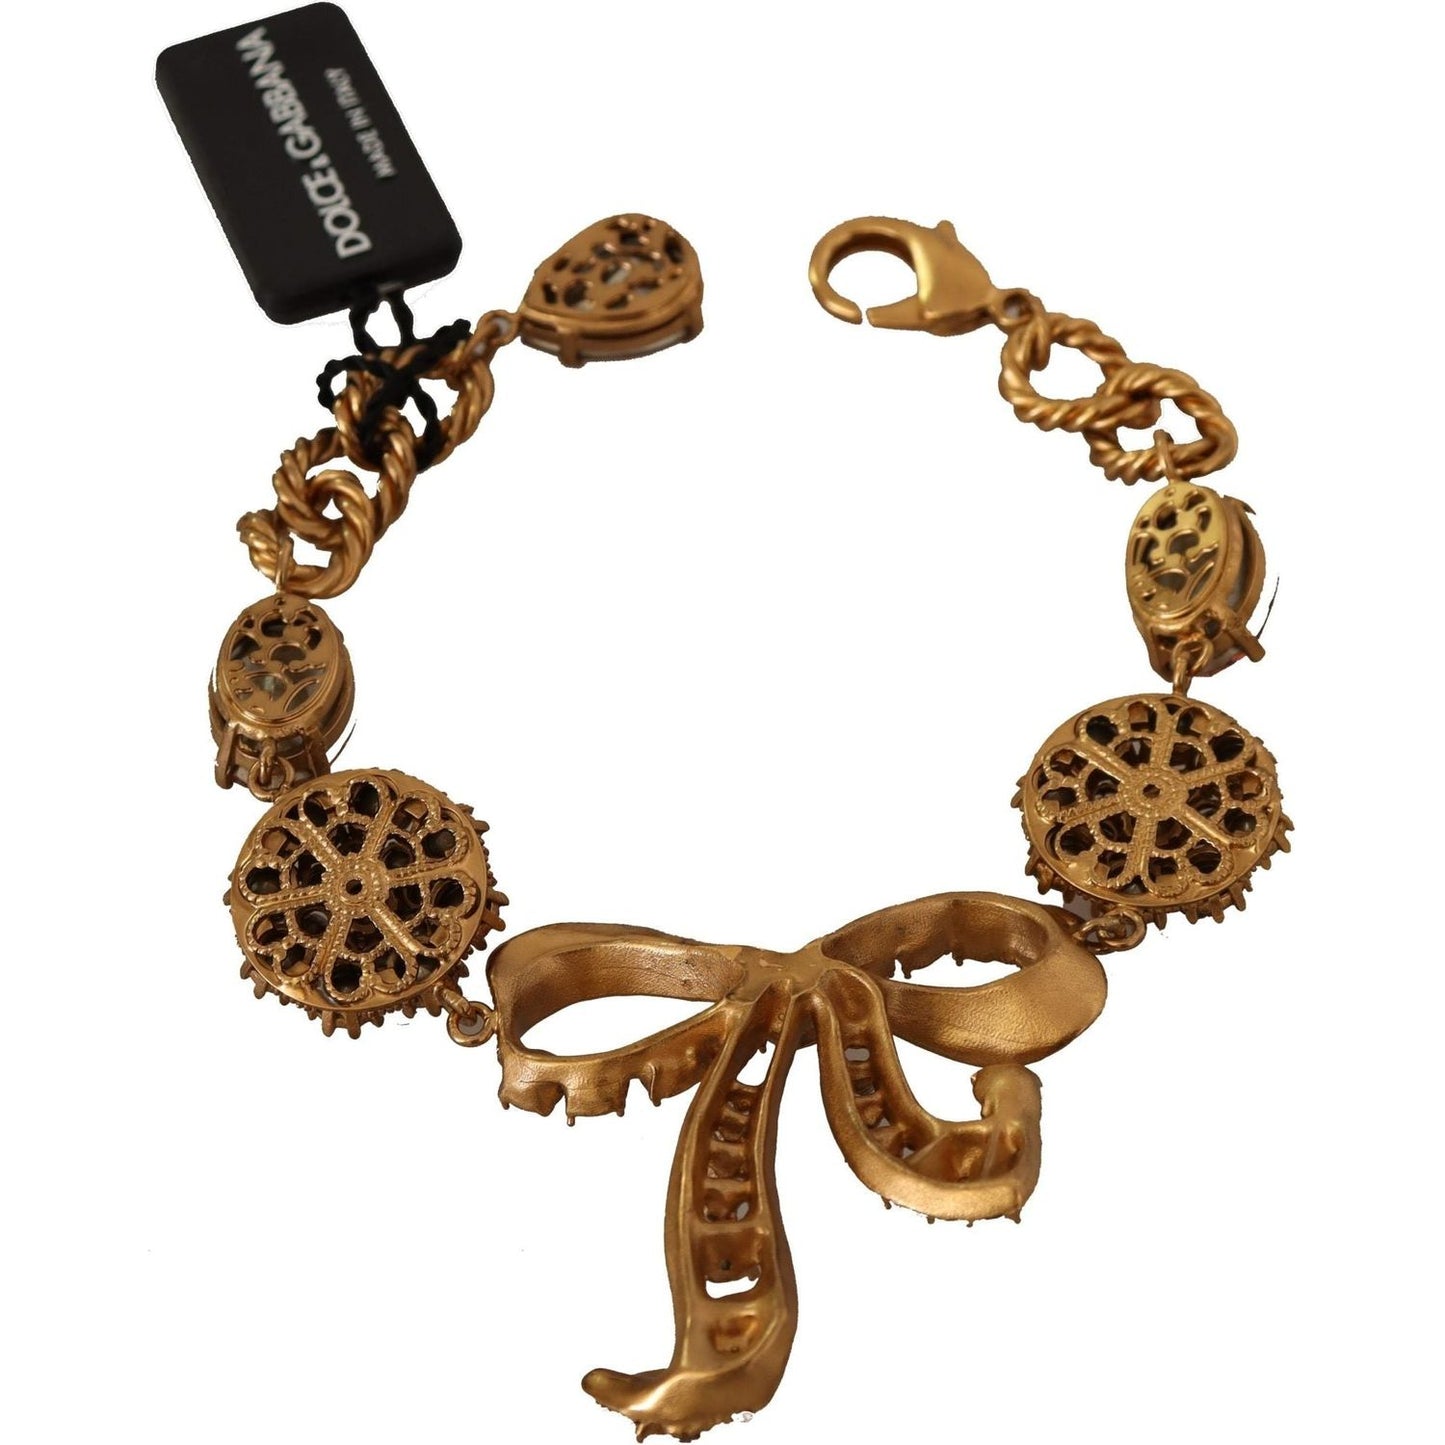 Dolce & Gabbana Elegant Crystal Charm Gold Bracelet gold-brass-chain-baroque-crystal-embellished-bracelet WOMAN BRACELET IMG_8712-scaled-11f3fe5f-064.jpg